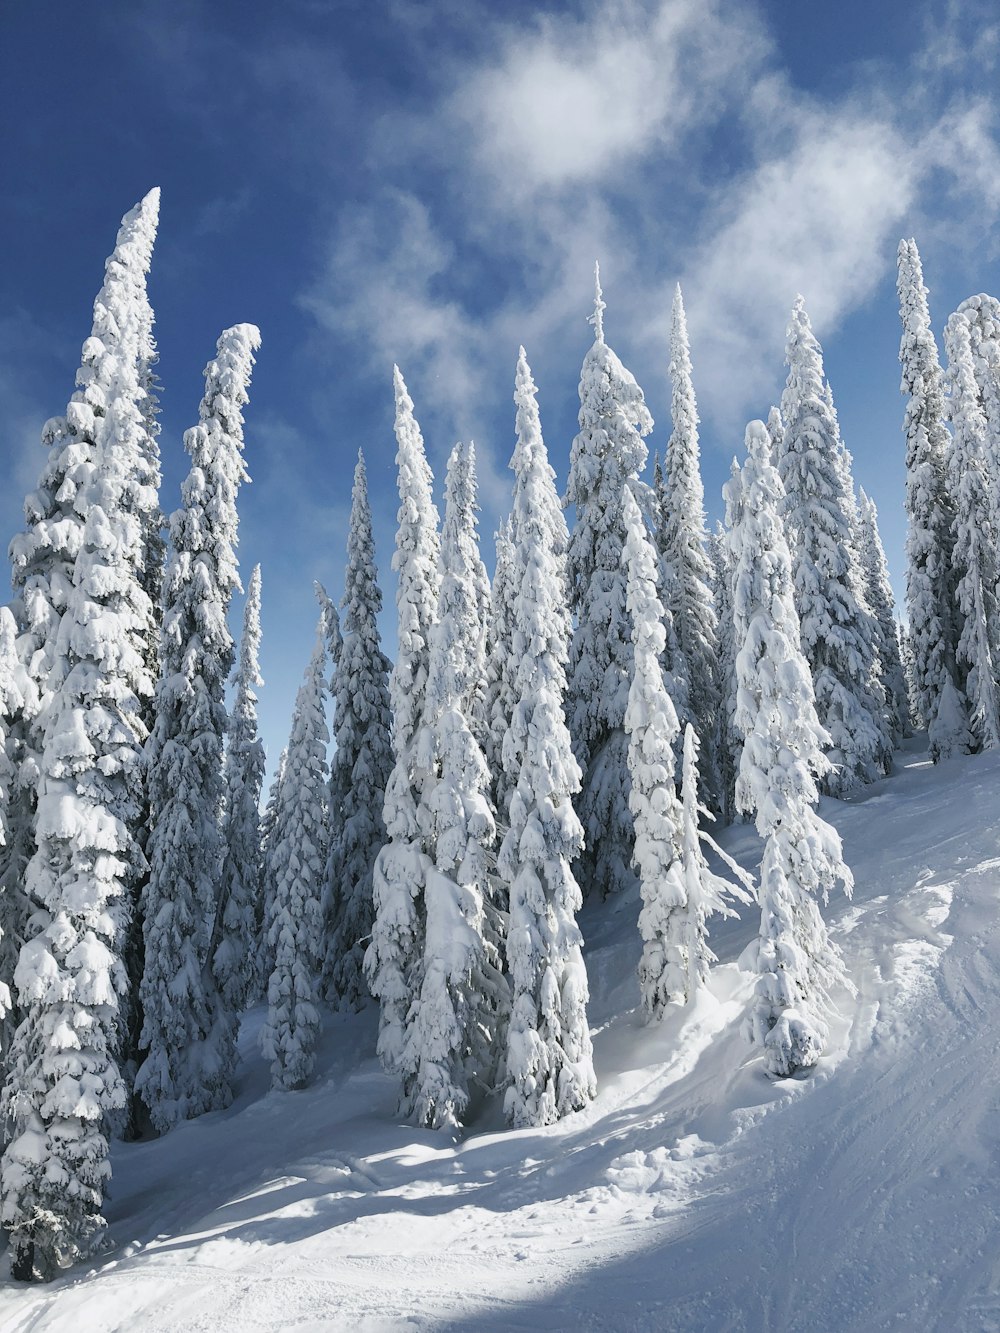 árboles cubiertos de nieve bajo nubes blancas y cielo azul durante el día